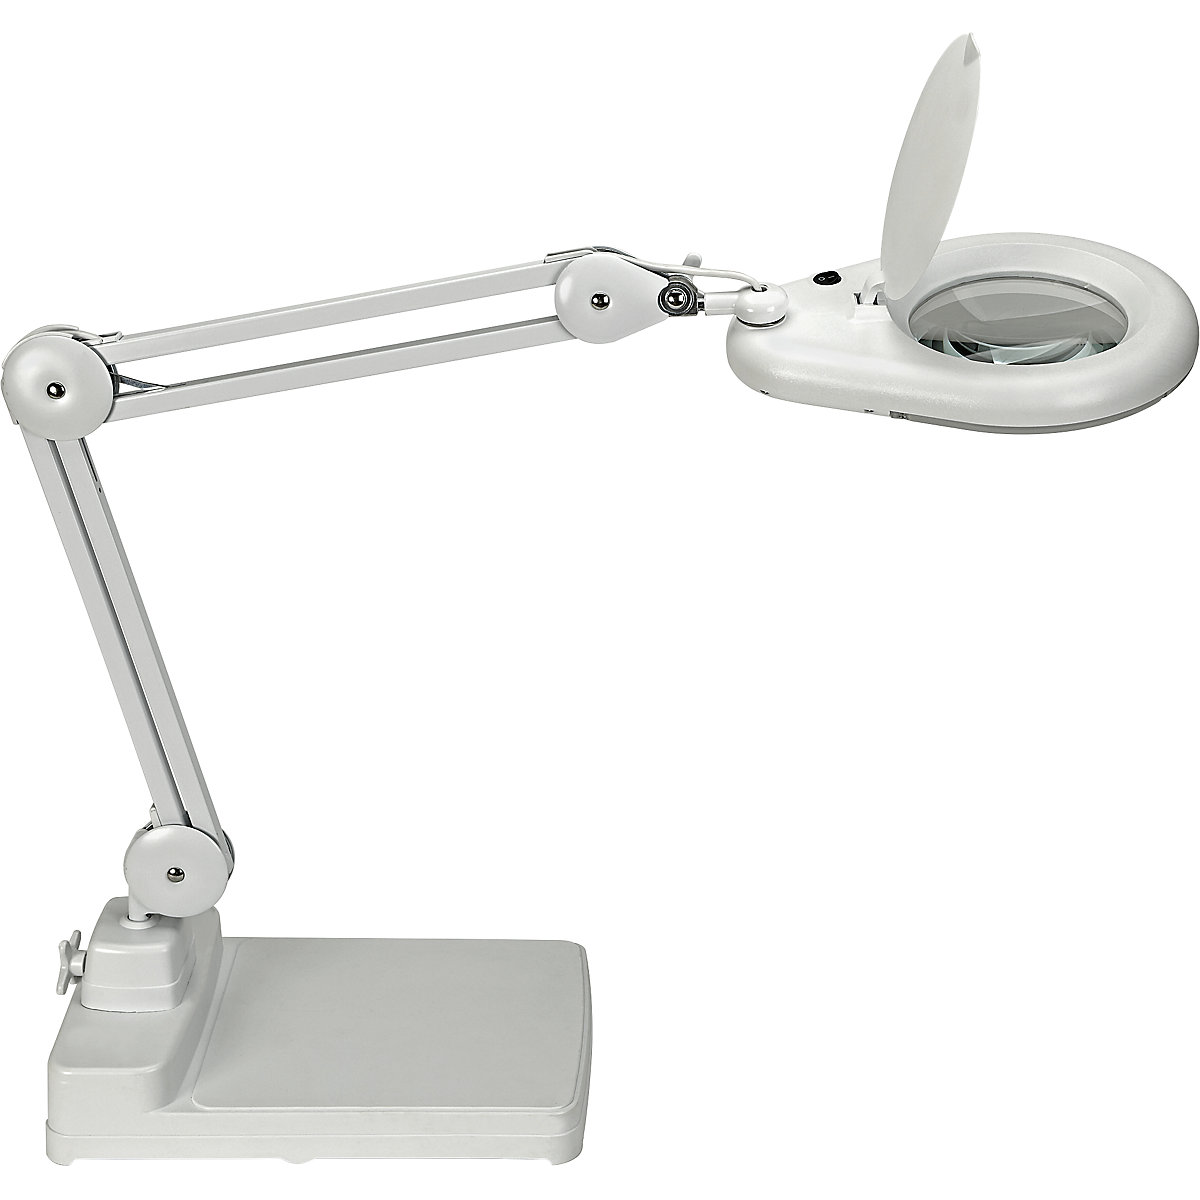 MAULviso LED magnifying lamp – MAUL, arm length 310 mm, with base, white-5